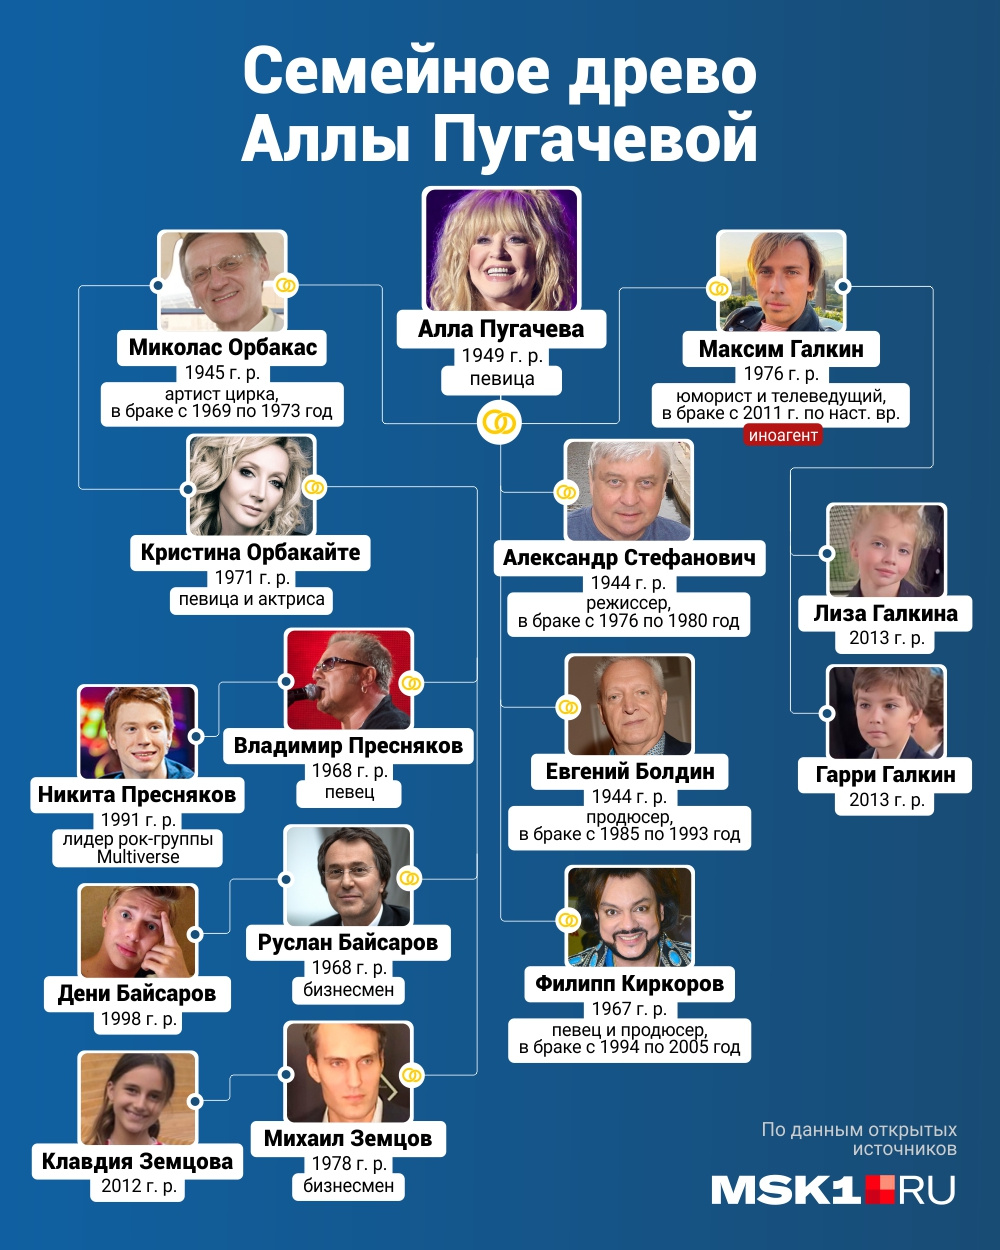 Алла Пугачева сейчас в пятом браке, у нее трое детей, трое внуков и трое правнуков